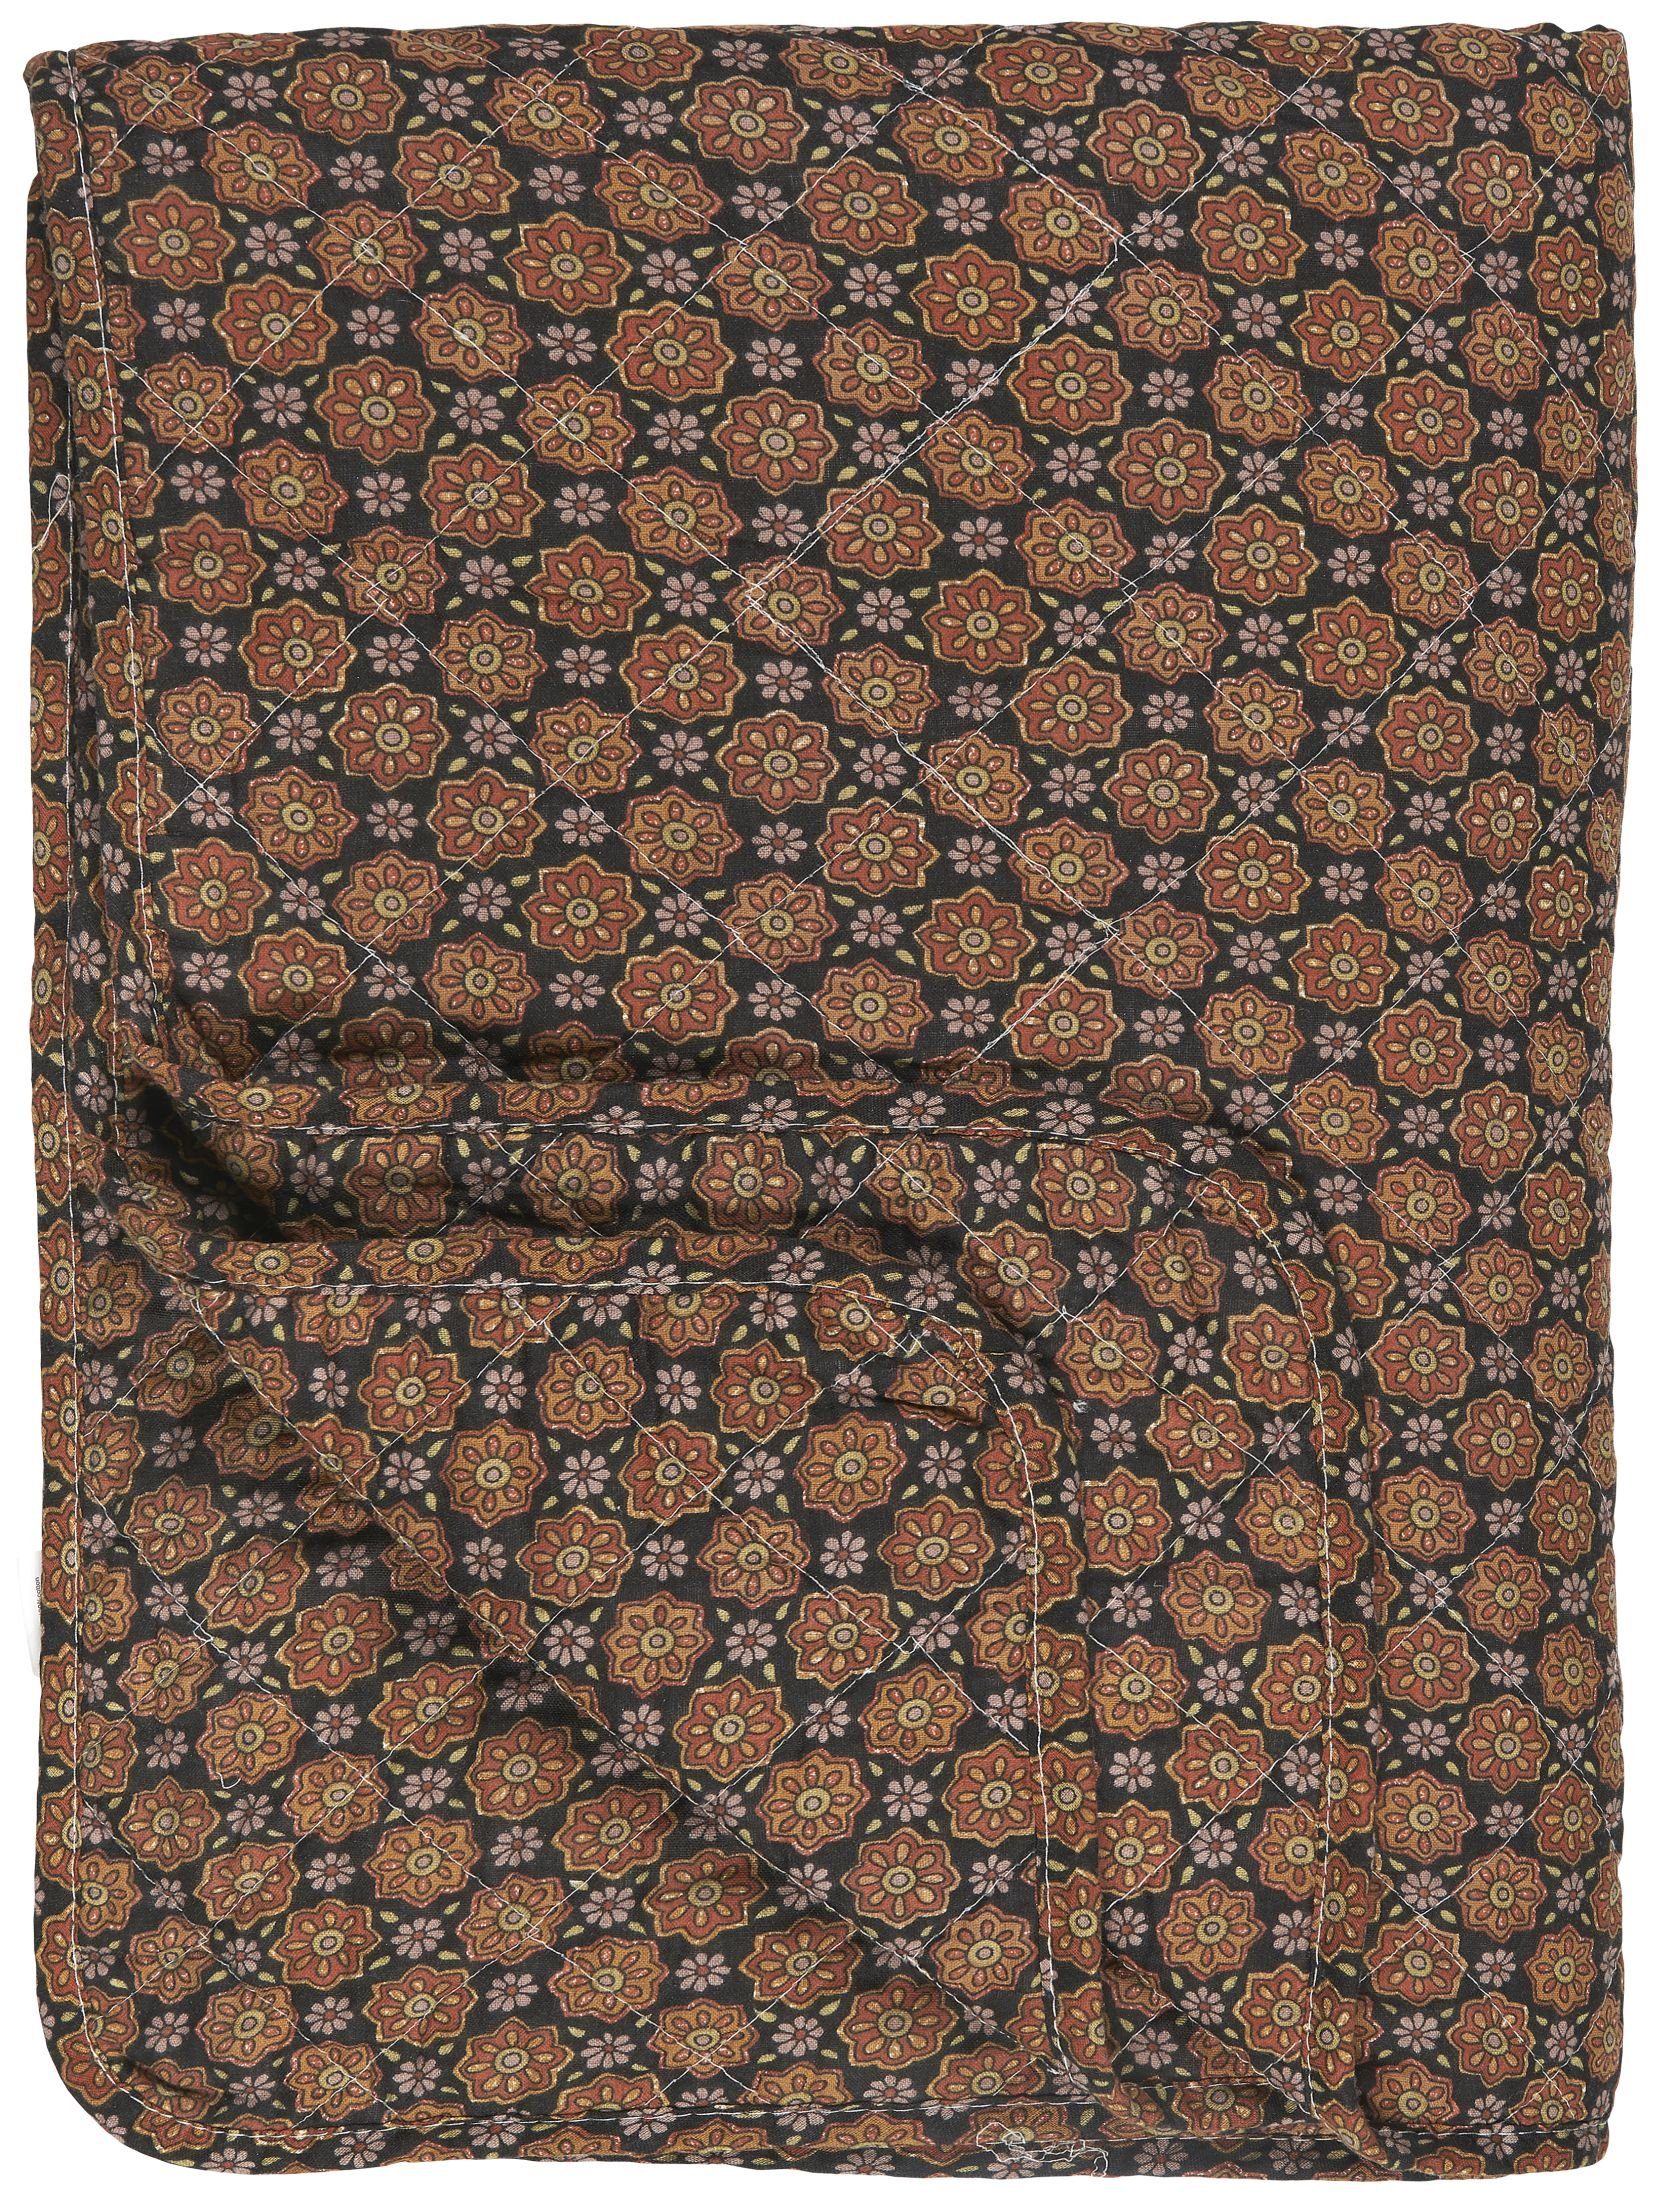 Wohndecke Decke Quilt Tagesdecke Überwurf Blumenmuster Braun Ib Laursen 07992-00, Ib Laursen